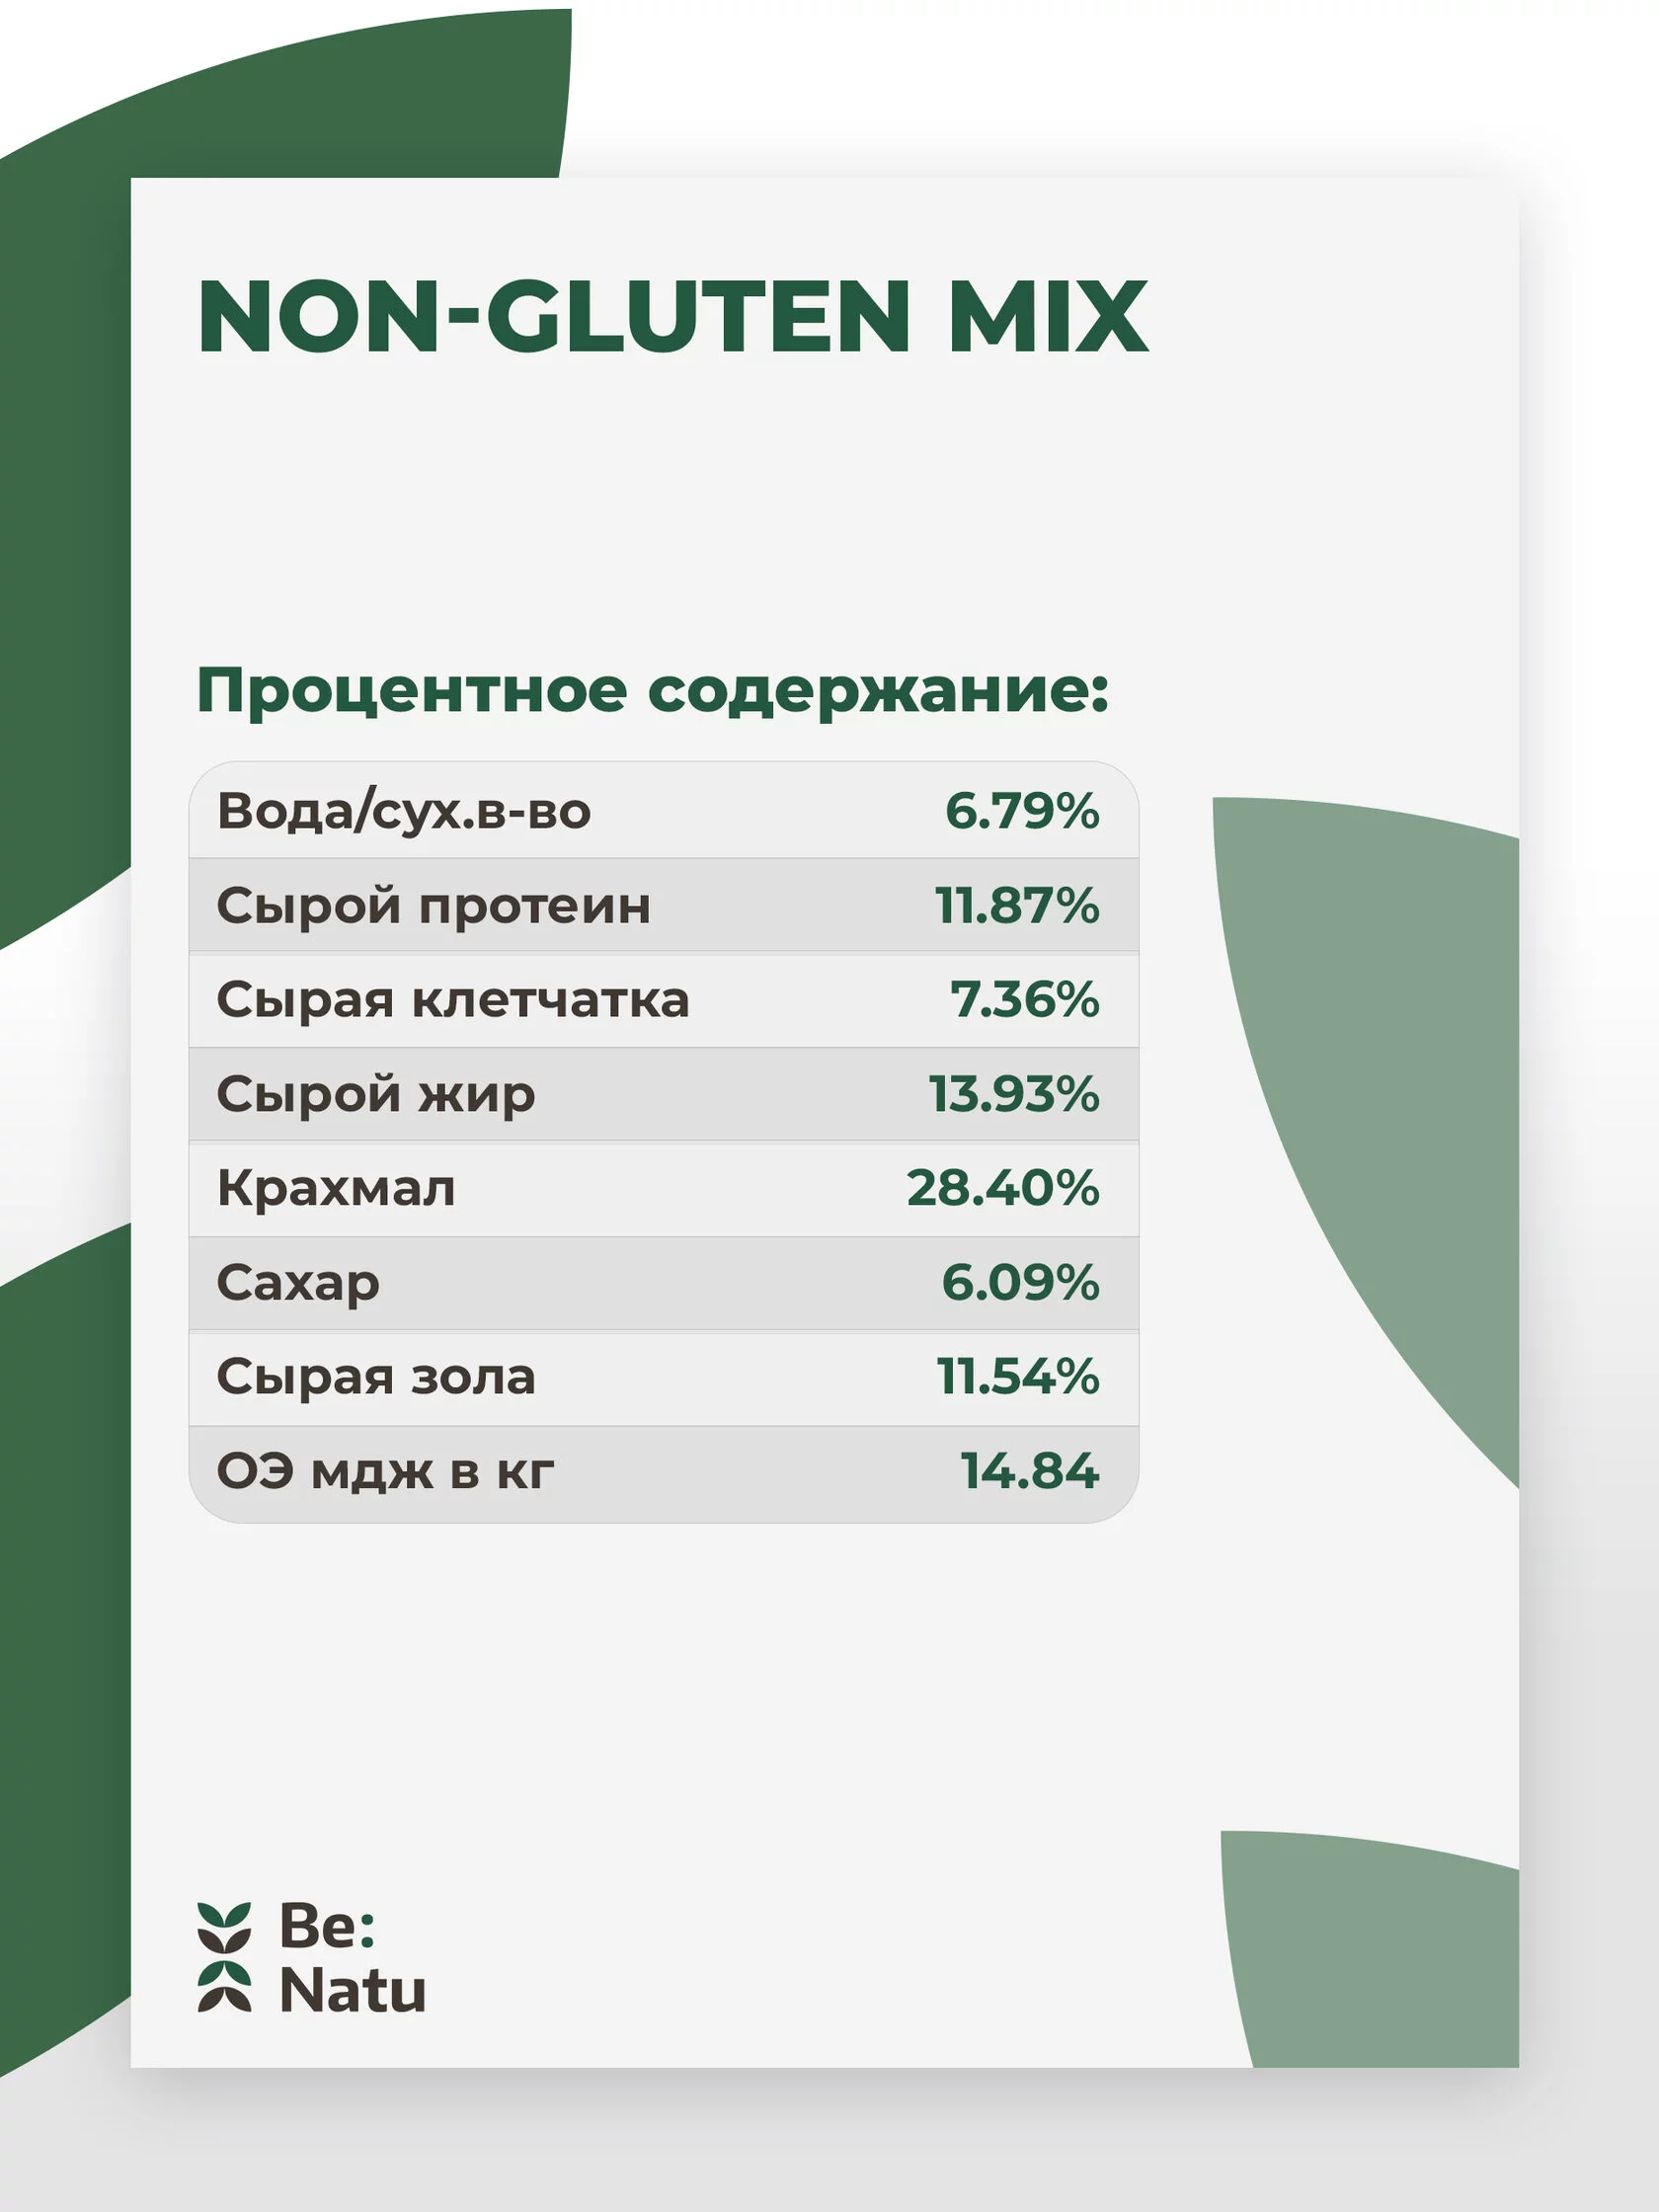  Be:Natu Non-gluten mix 20 